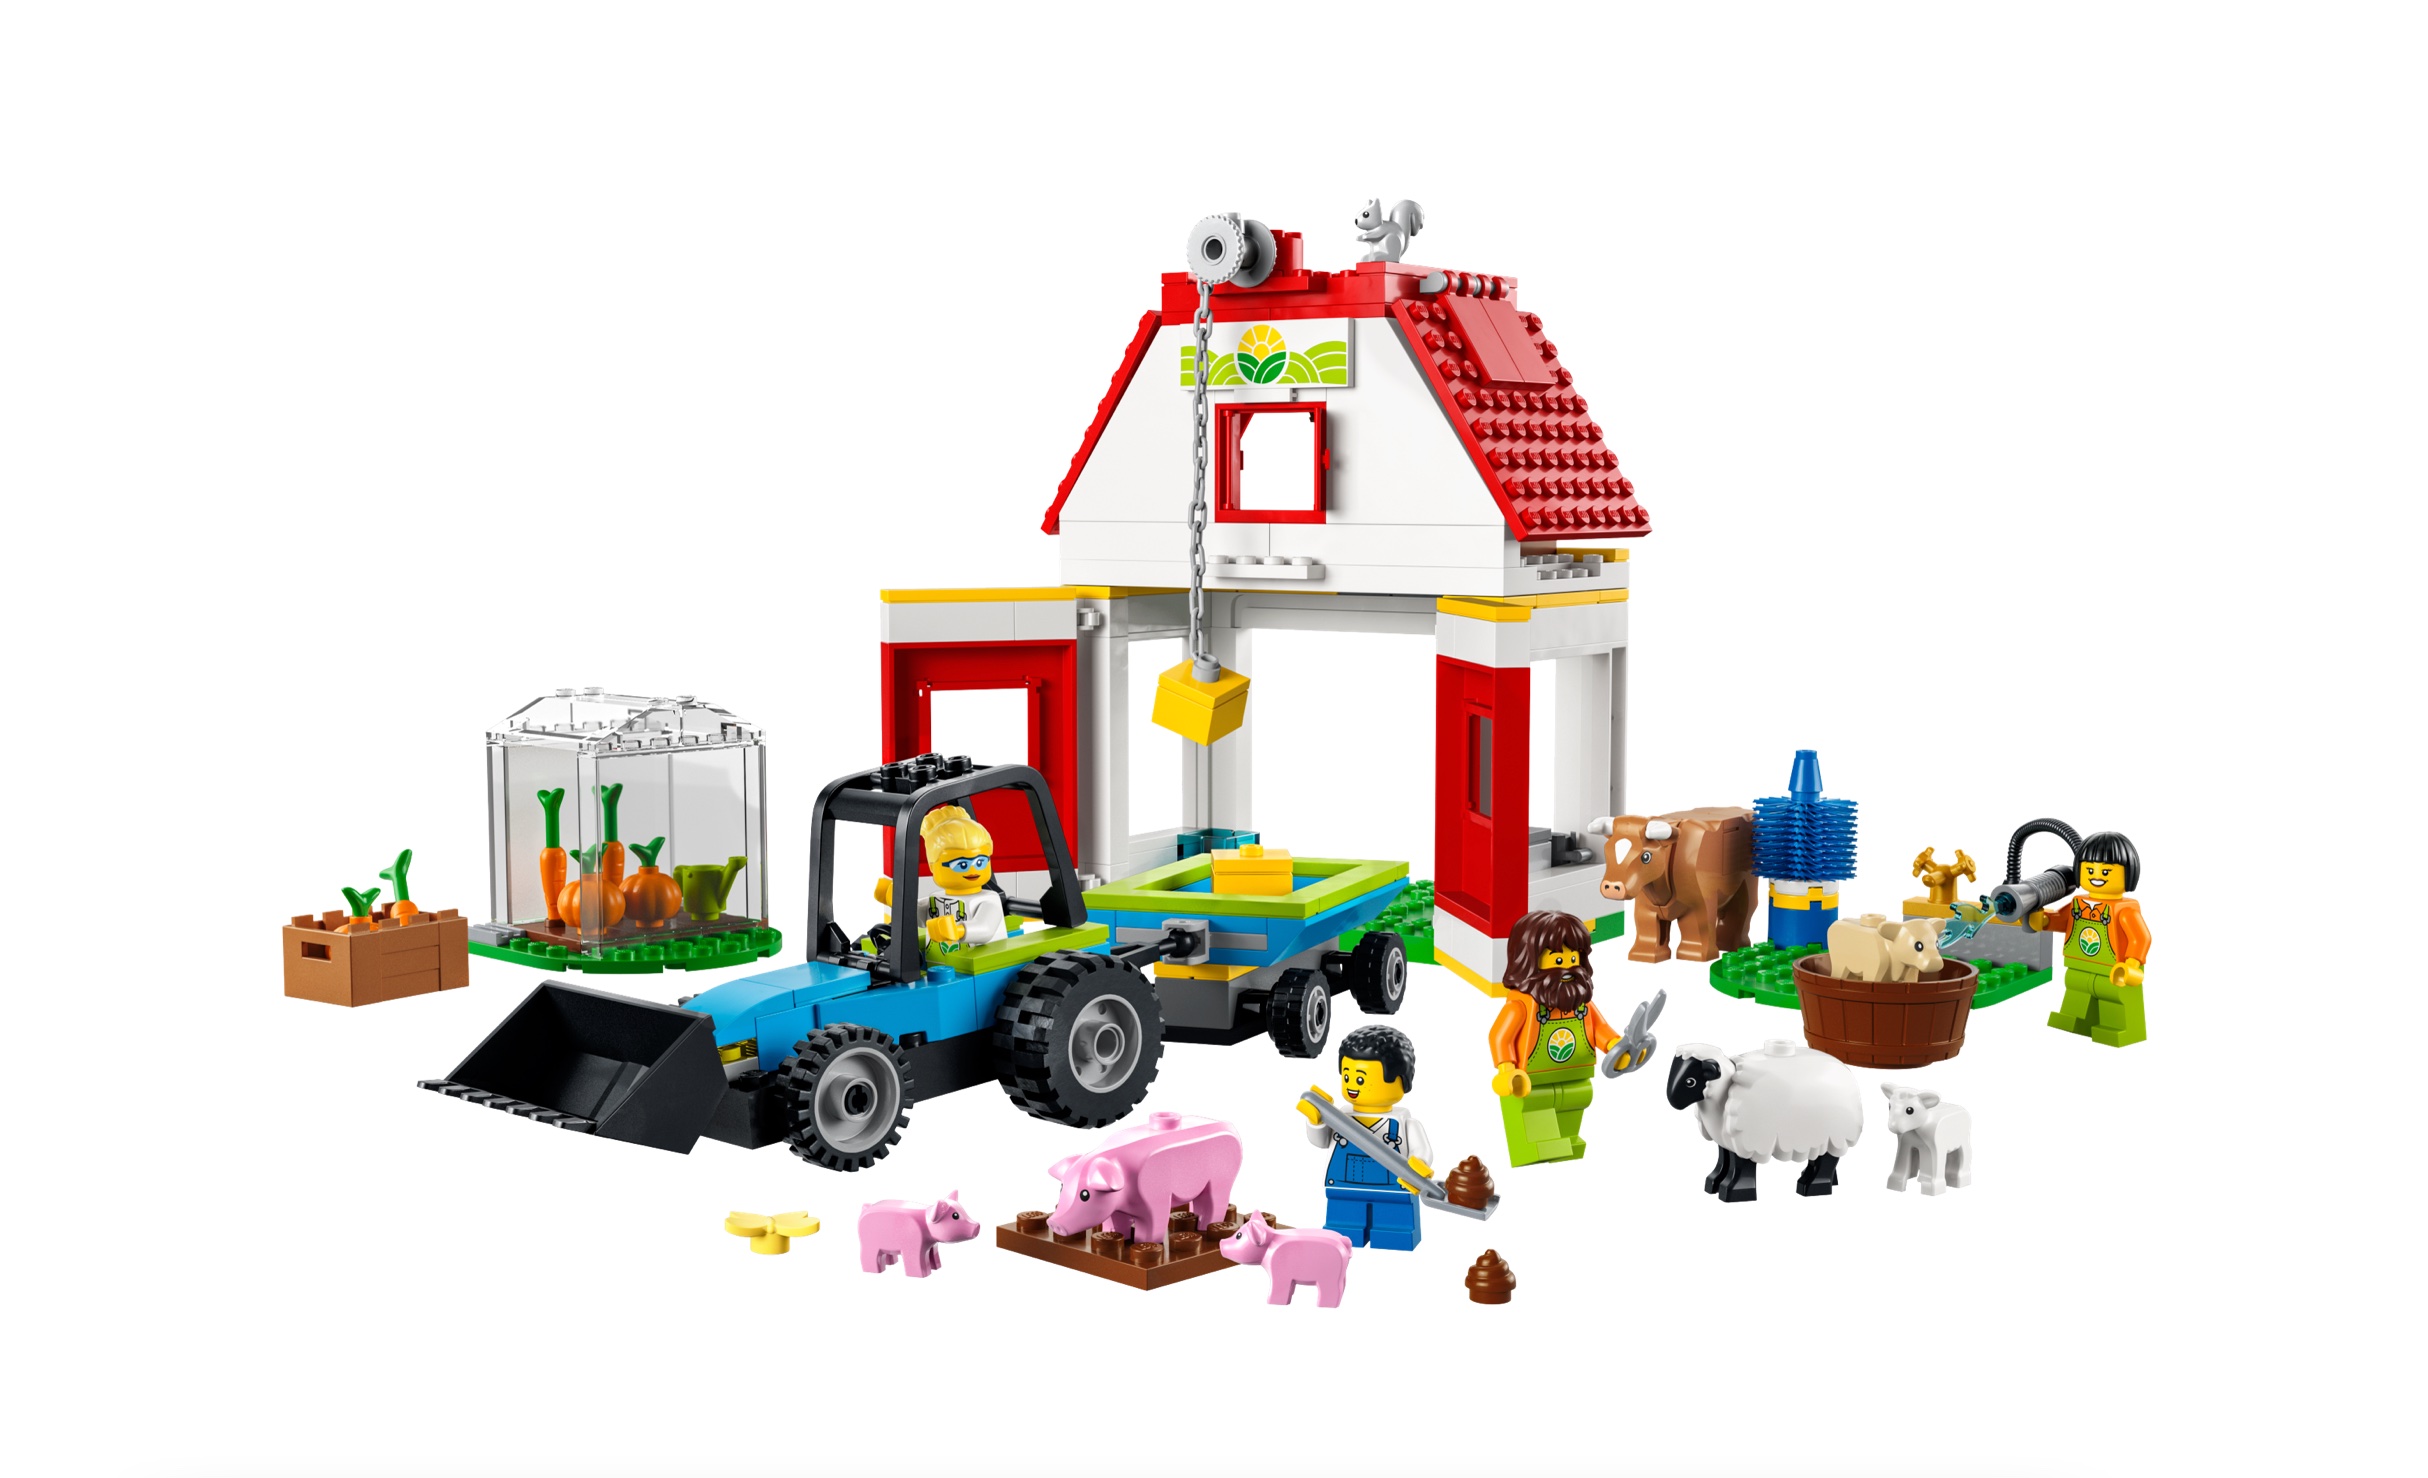 LEGO City - Bauernhof mit Tieren